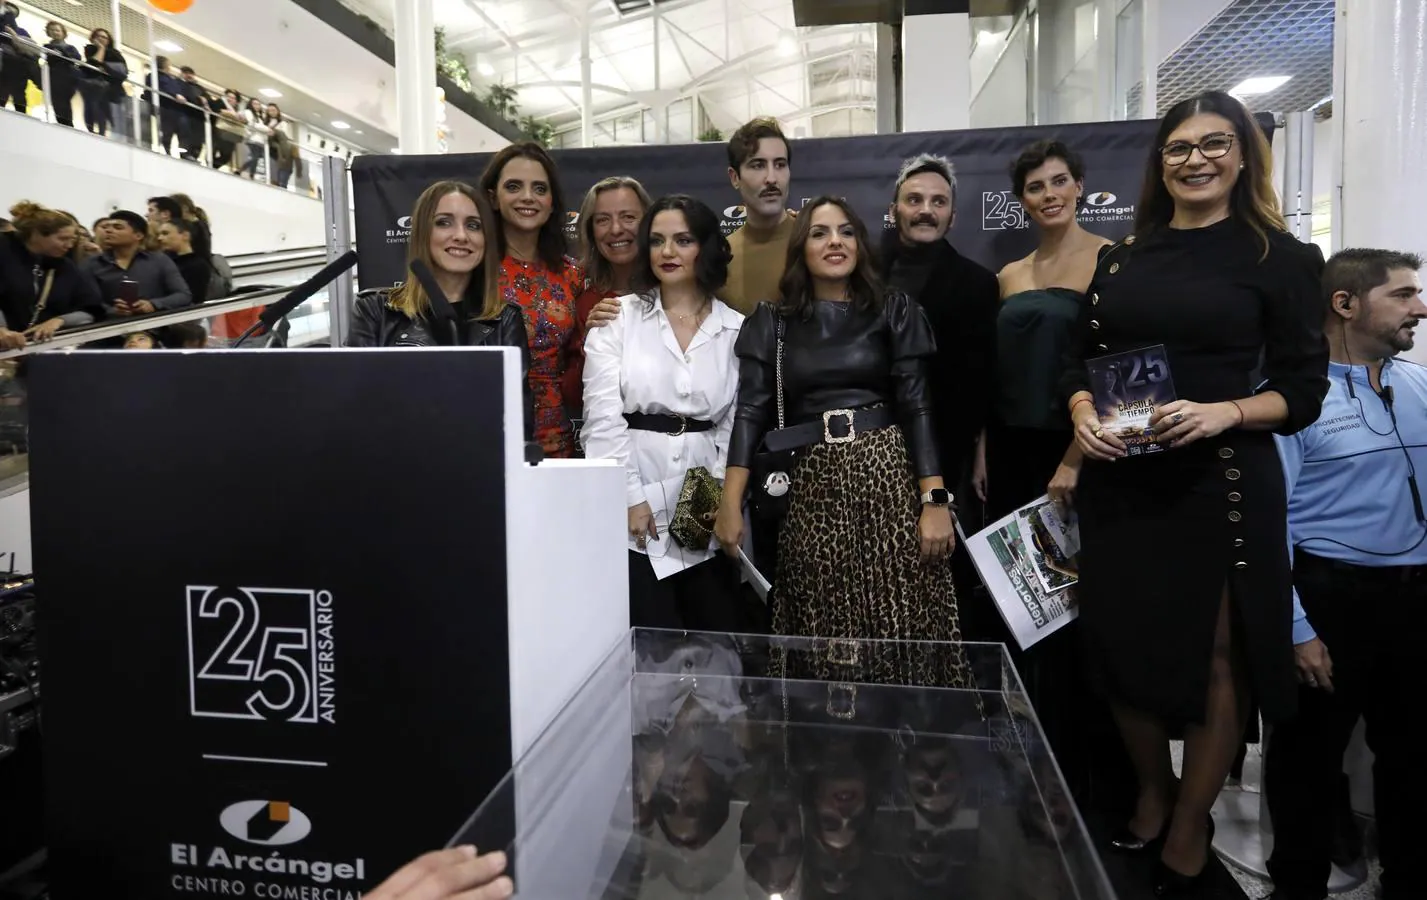 El 25 aniversario del centro comercial El Arcángel de Córdoba, en imágenes